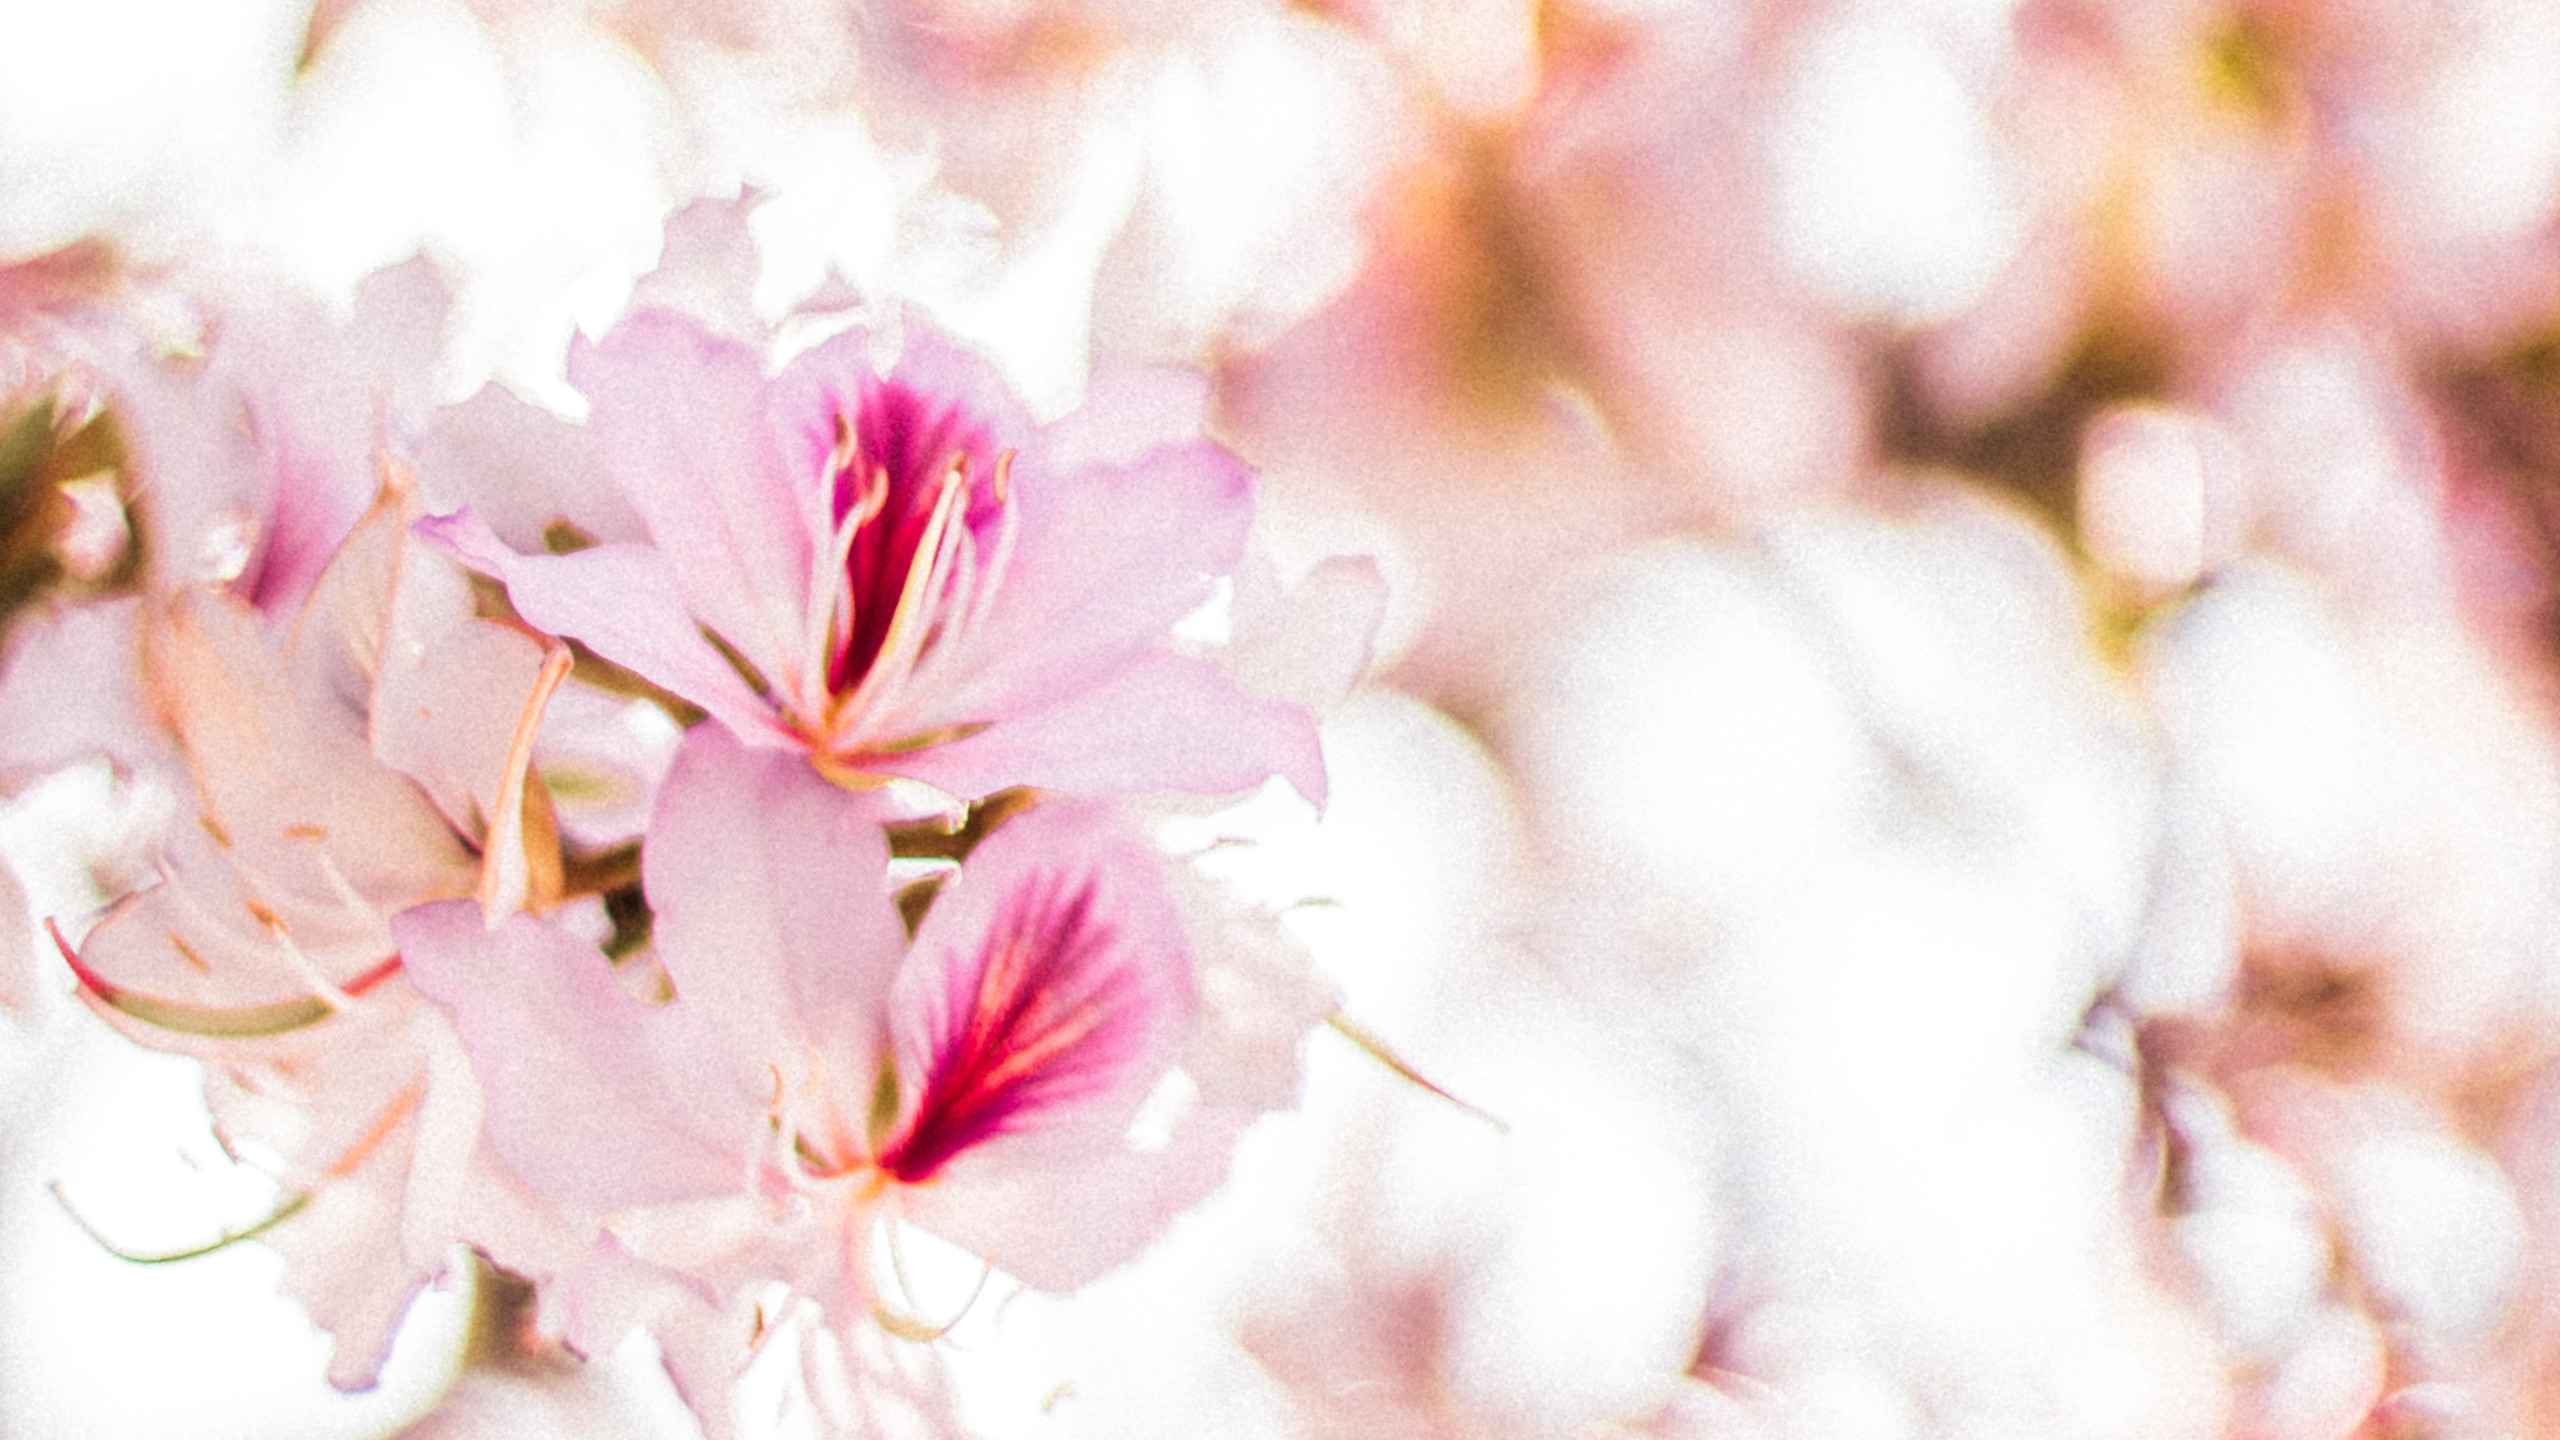 粉色的唯美樱花近距离摄影植物桌面壁纸下载